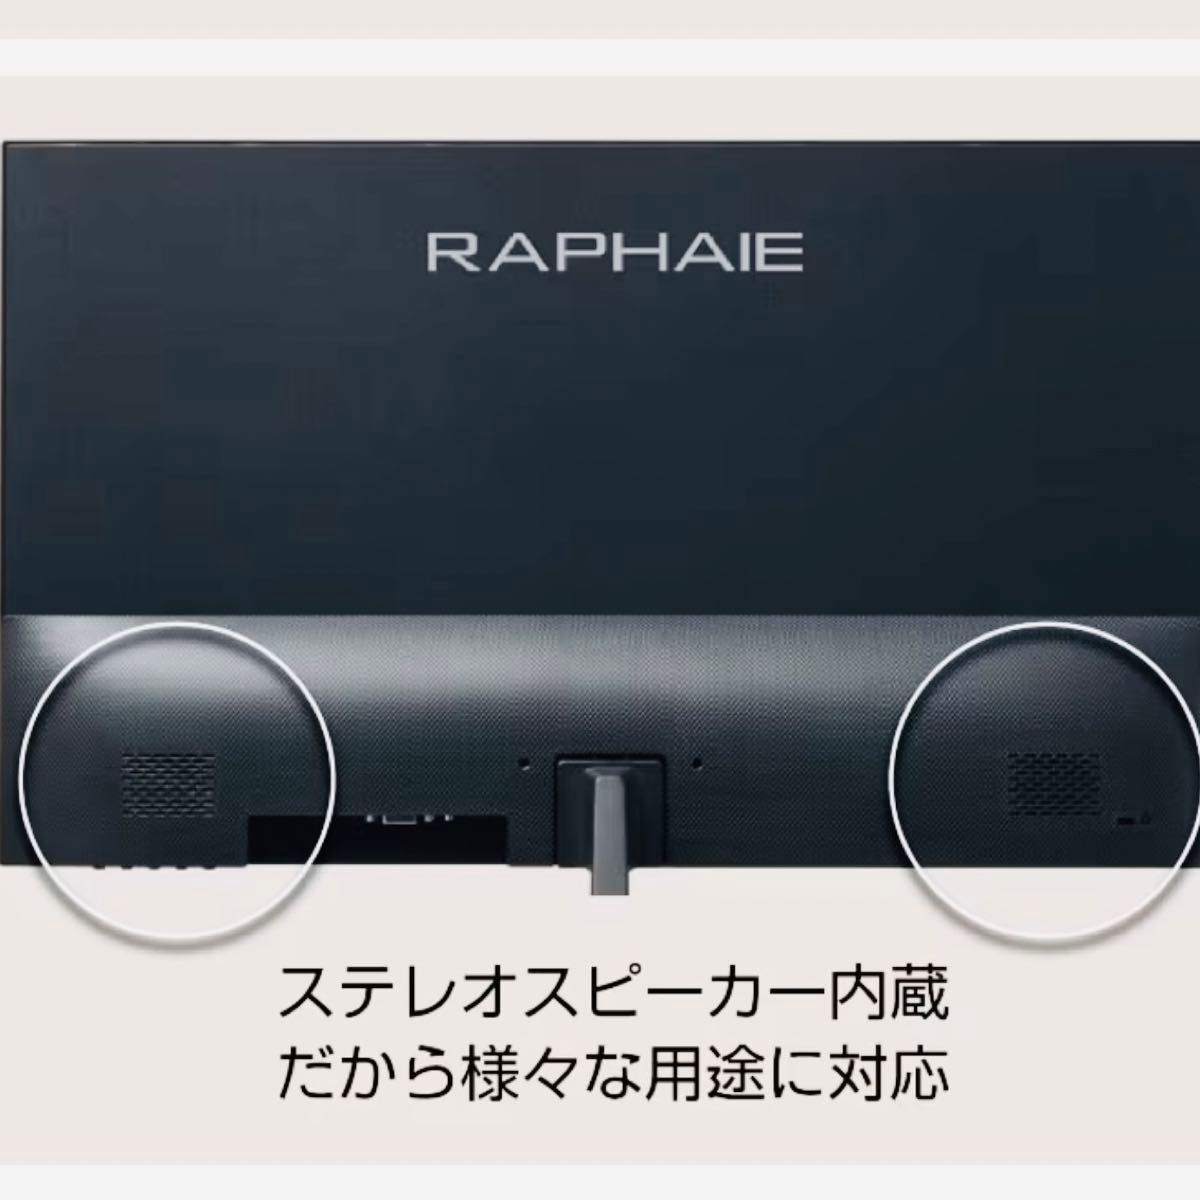 【新品・未使用】RAPHAIE 21.5型フルHD液晶モニター RL220FS ゲーミング